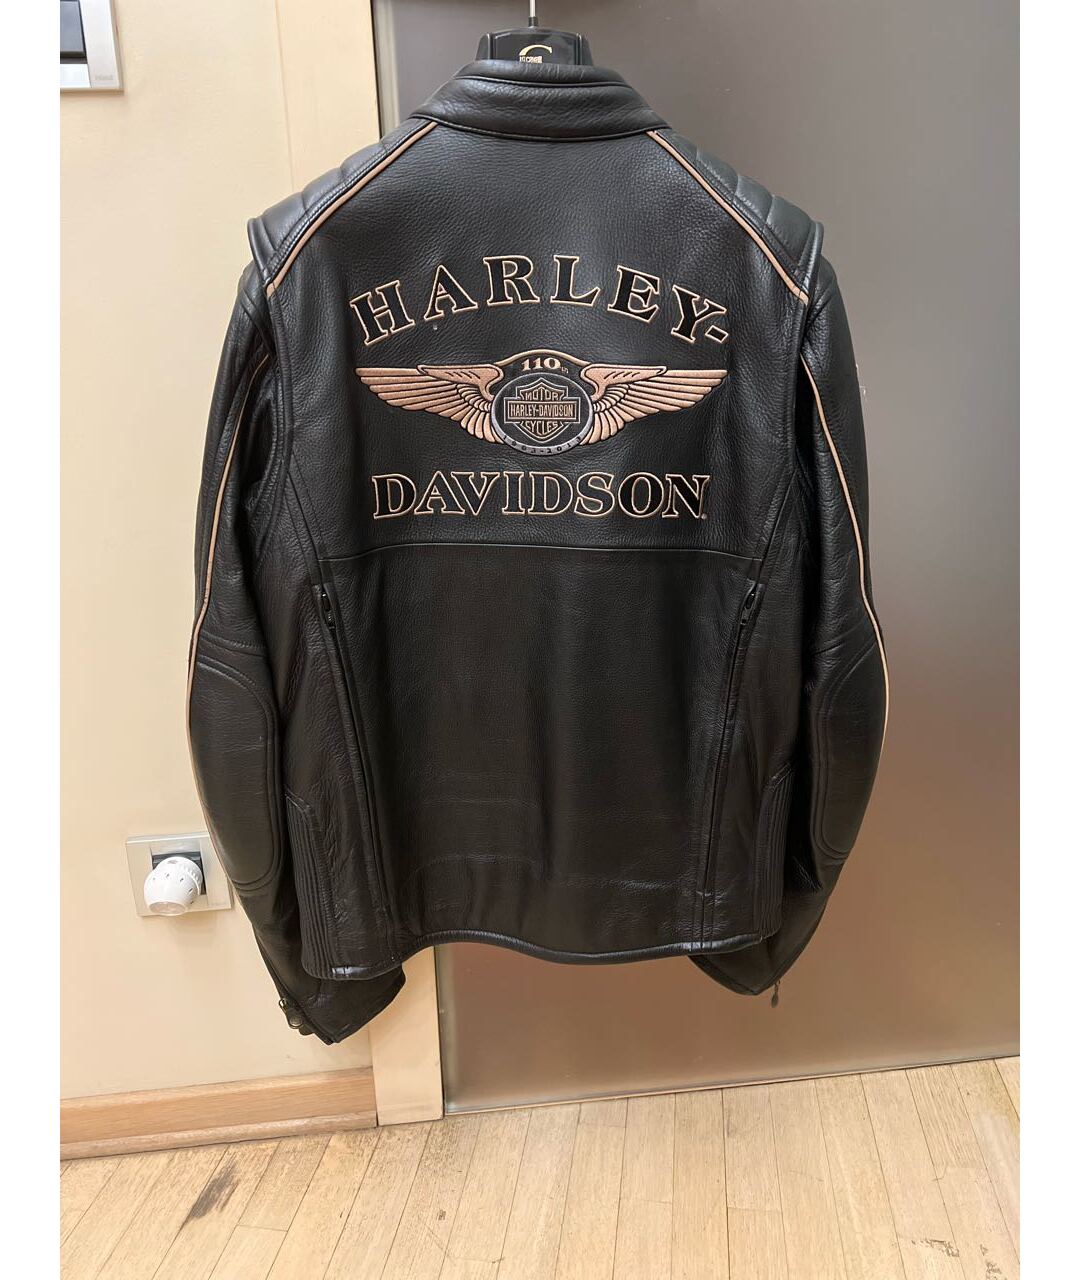 Harley Davidson Черная кожаная куртка, фото 2